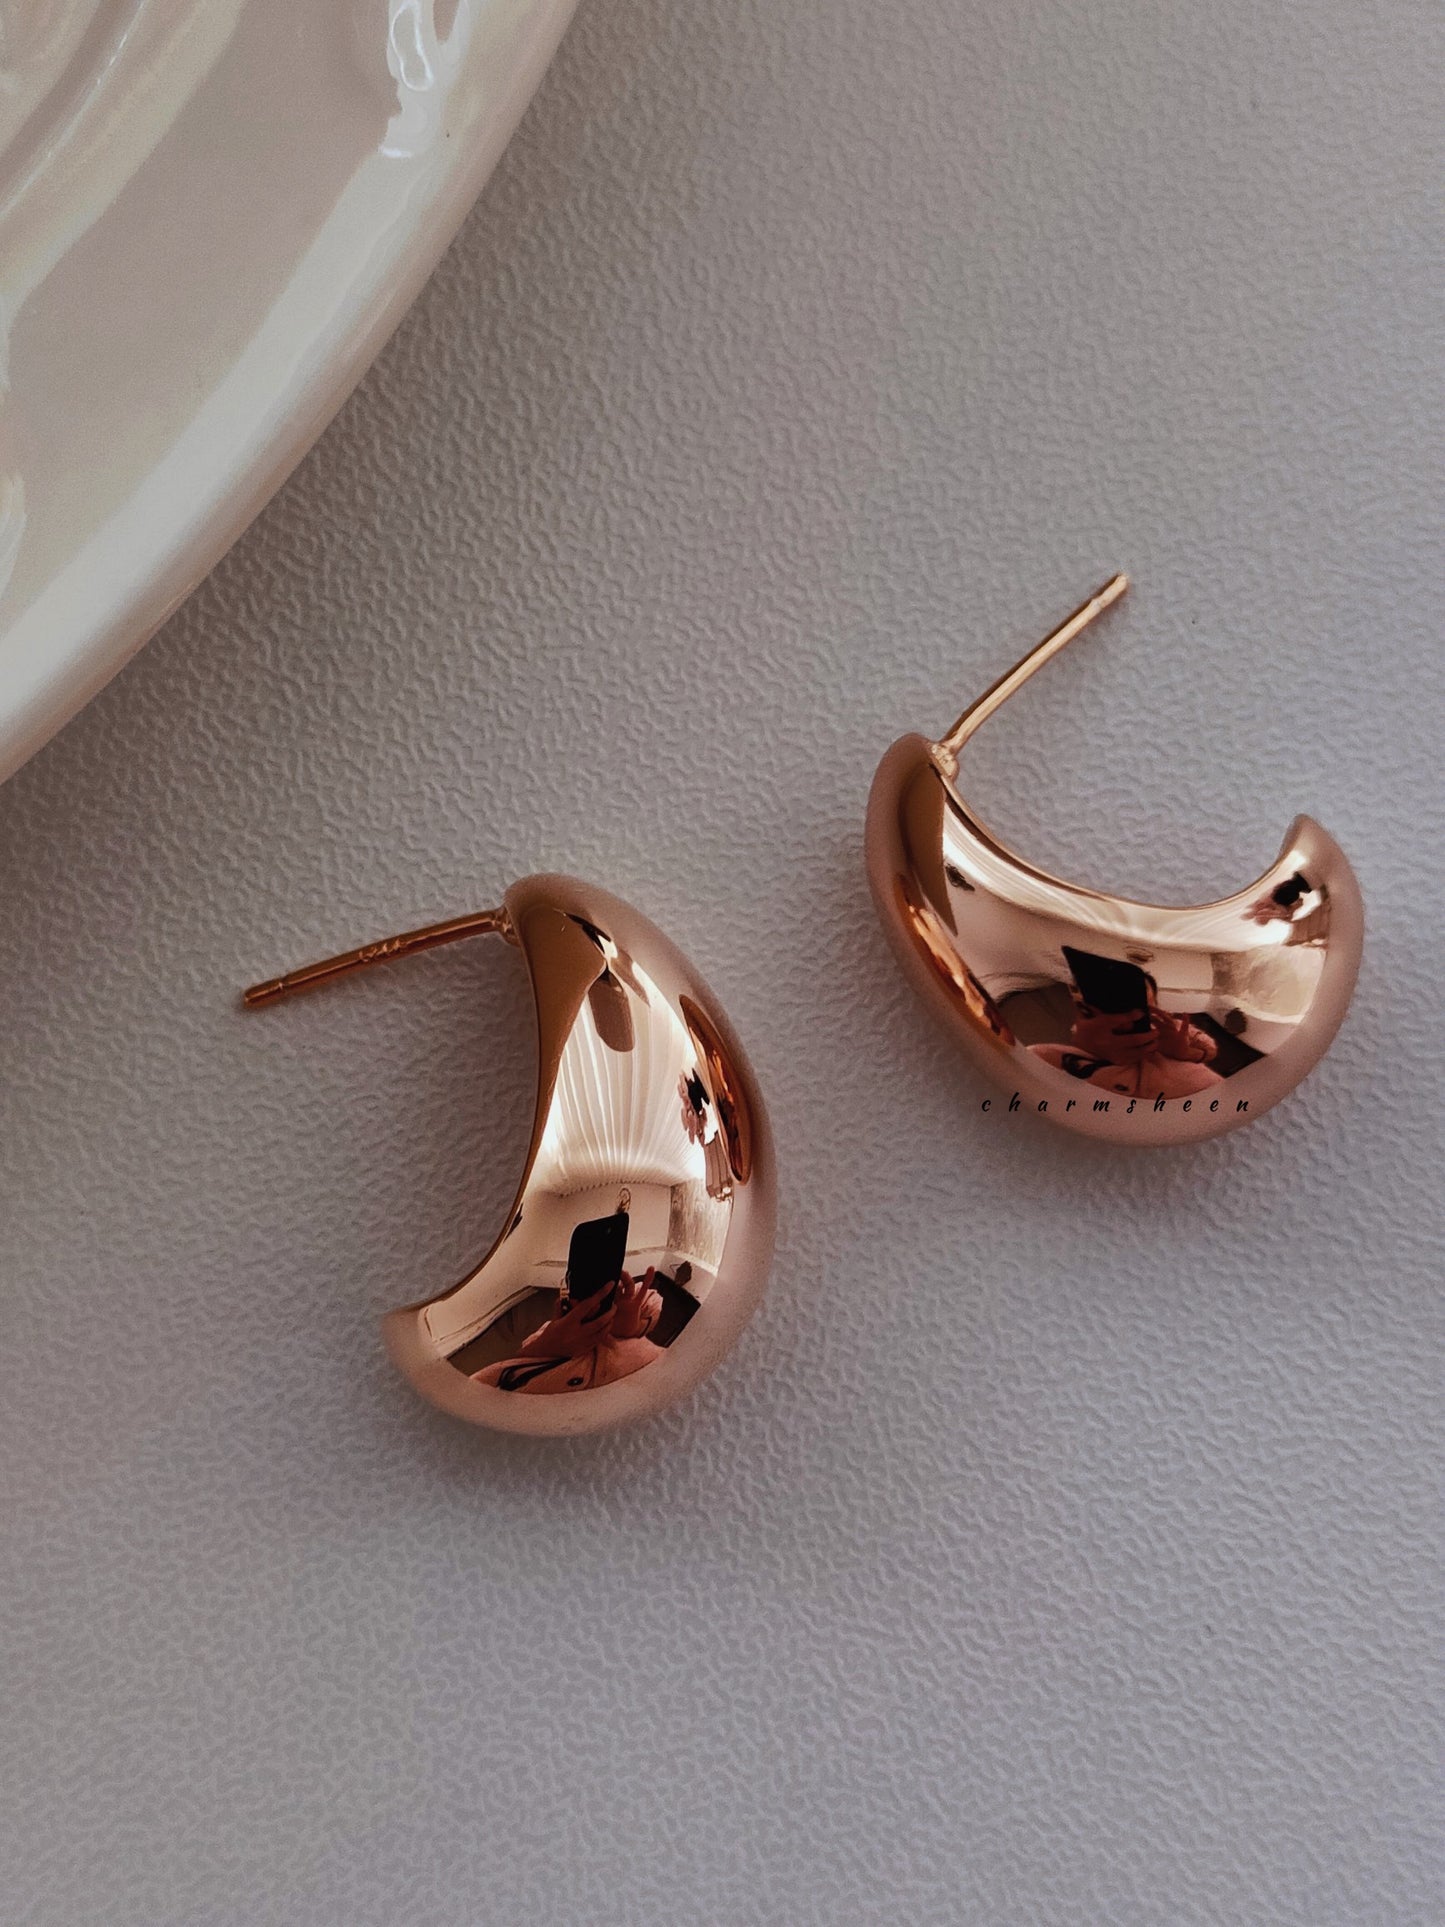 [Lunar] 18k Gold Plating Sterling Silver Hoops Earrings